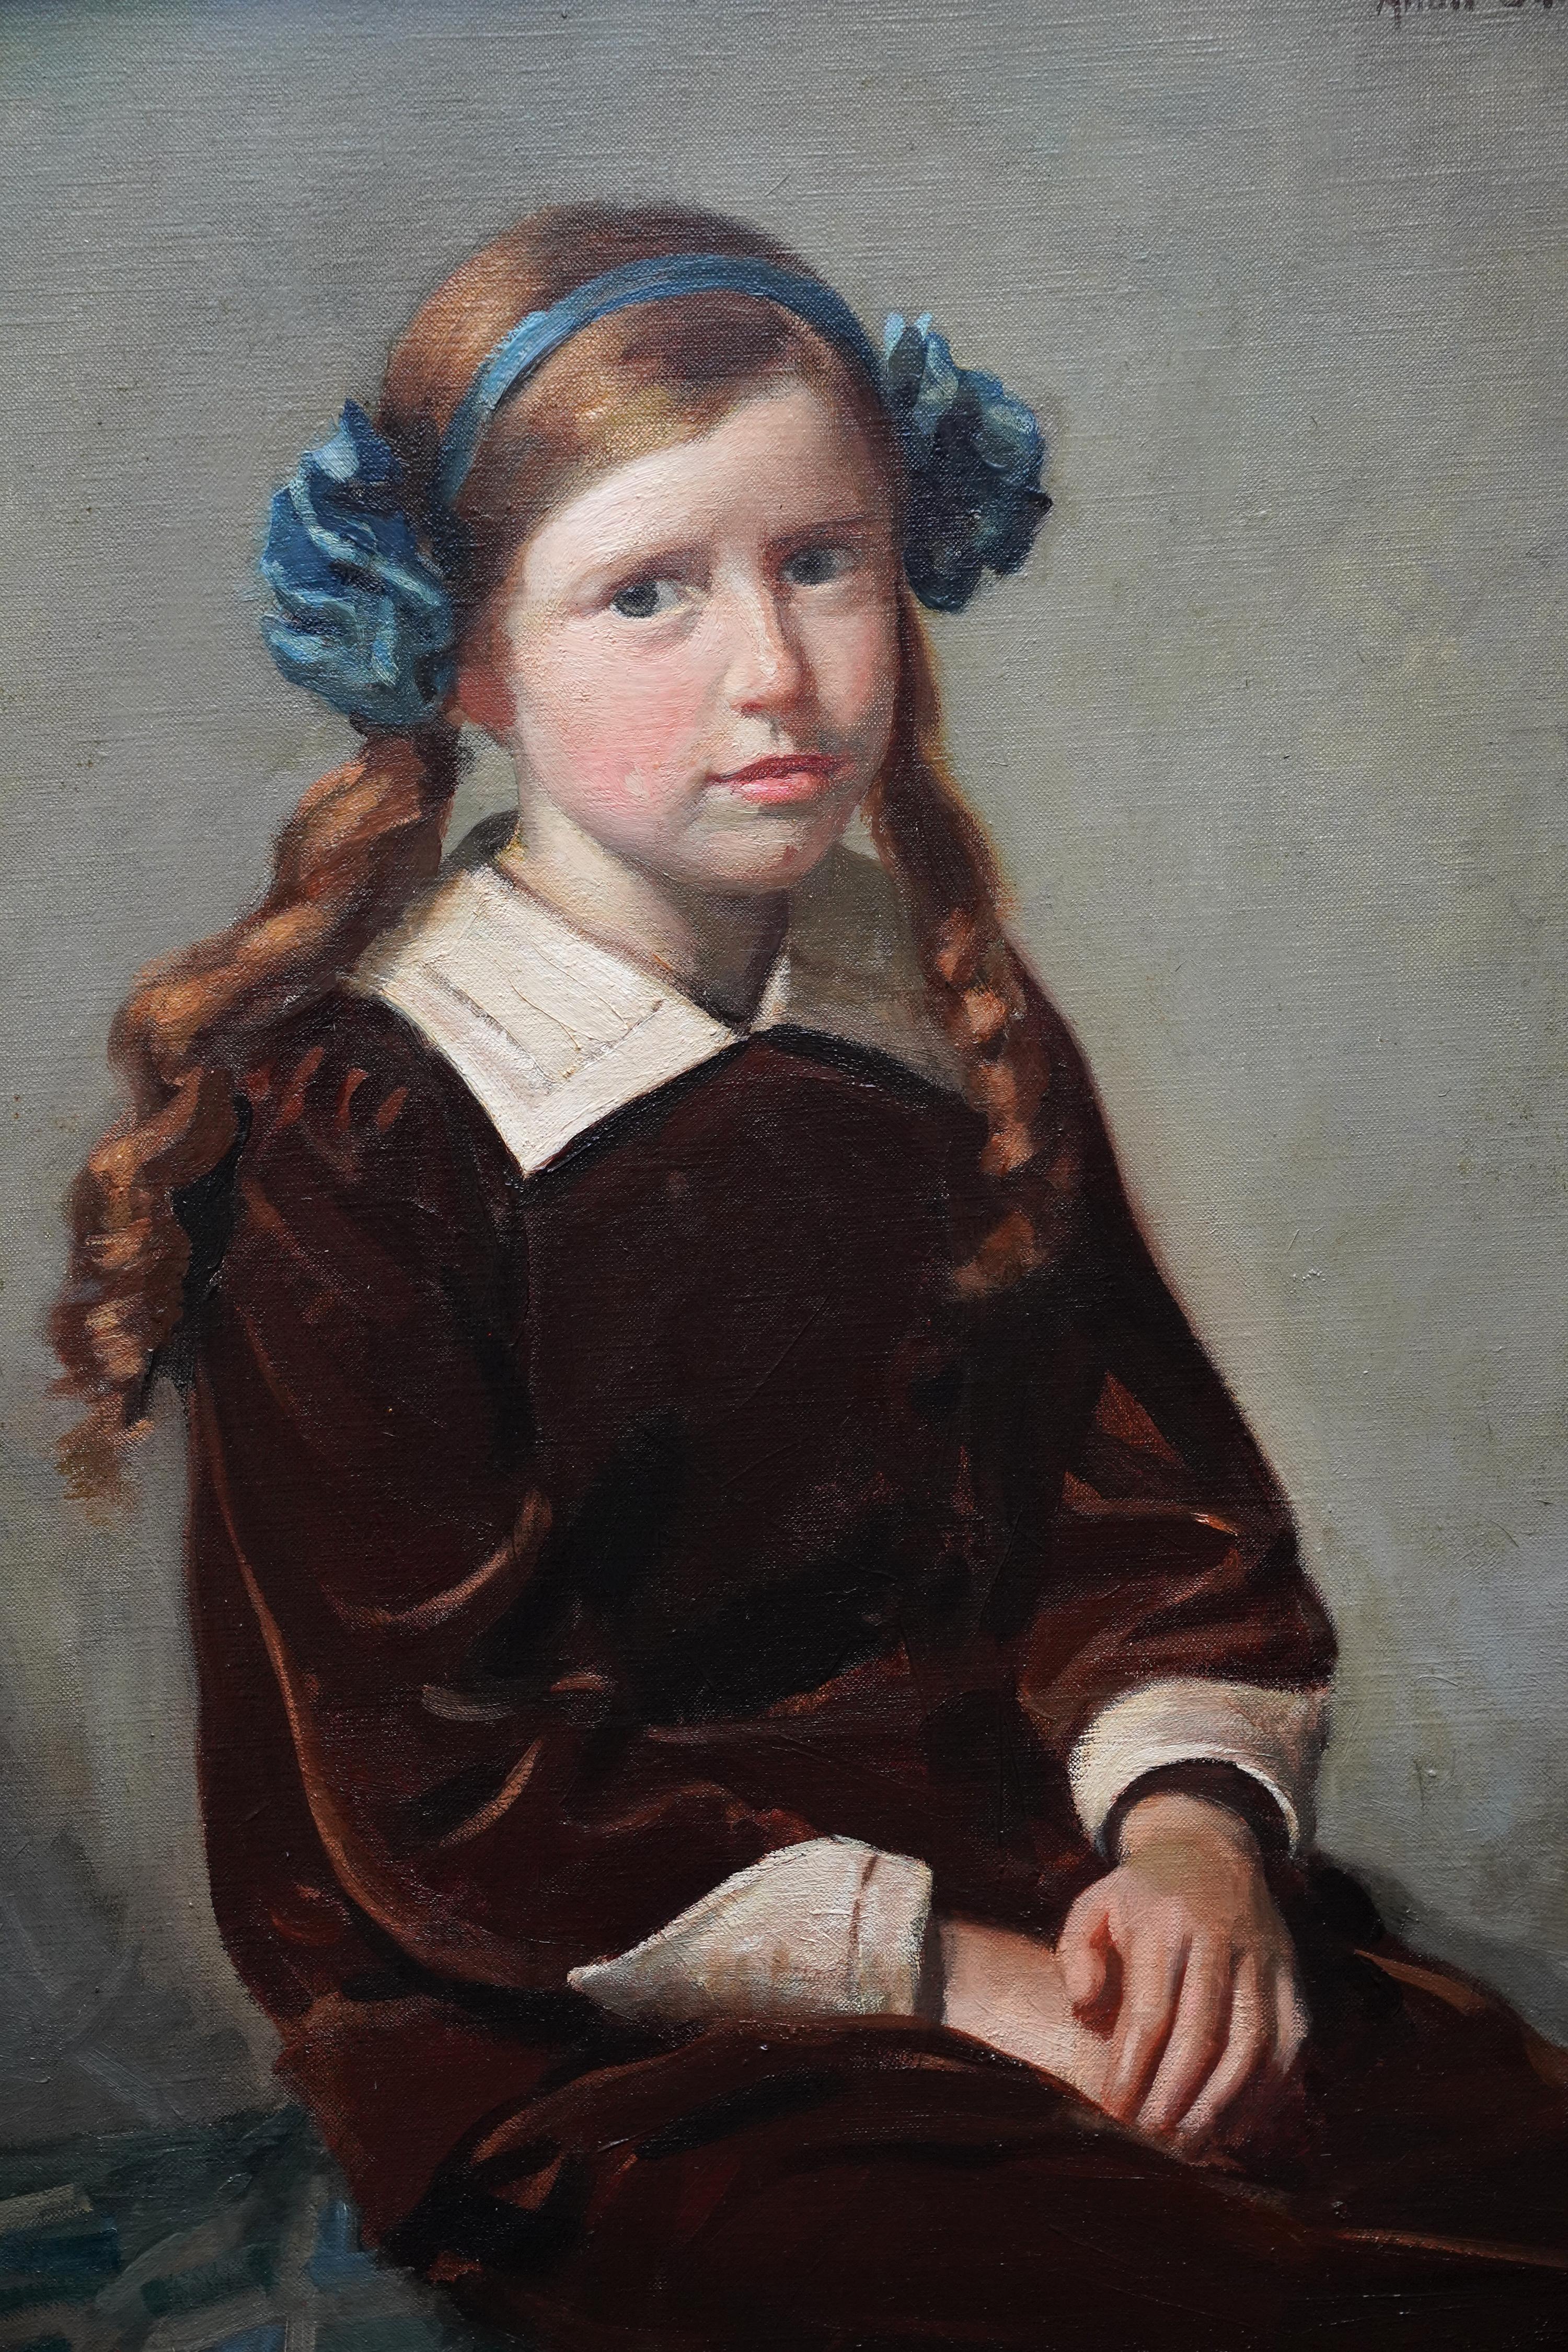 Dieses schöne Porträt-Ölgemälde stammt von dem schottischen Künstler Allan Newton Sutherland, der es ausgestellt hat. Es wurde 1914 gemalt und zeigt ein sitzendes Porträt eines jungen schottischen Mädchens mit kastanienbraunem Haar und einem blauen